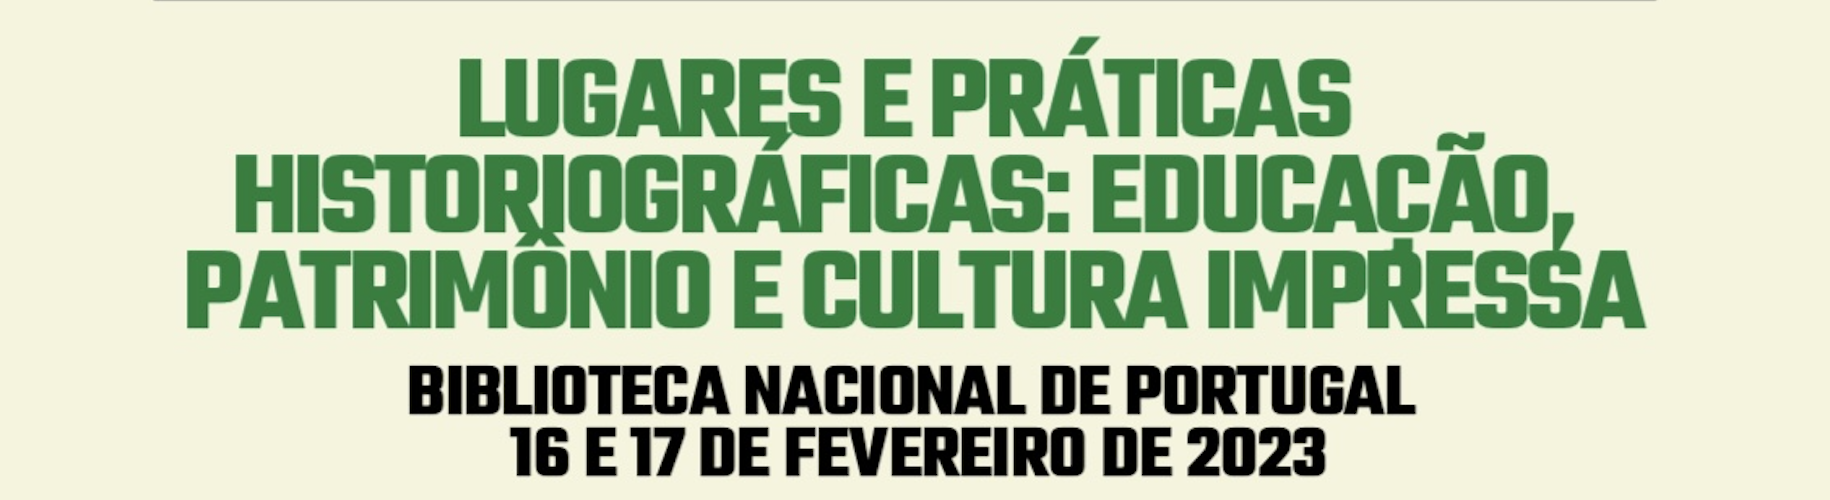 International conference Lugares e Práticas Historiográficas: Educação, Património e Cultura Impressa